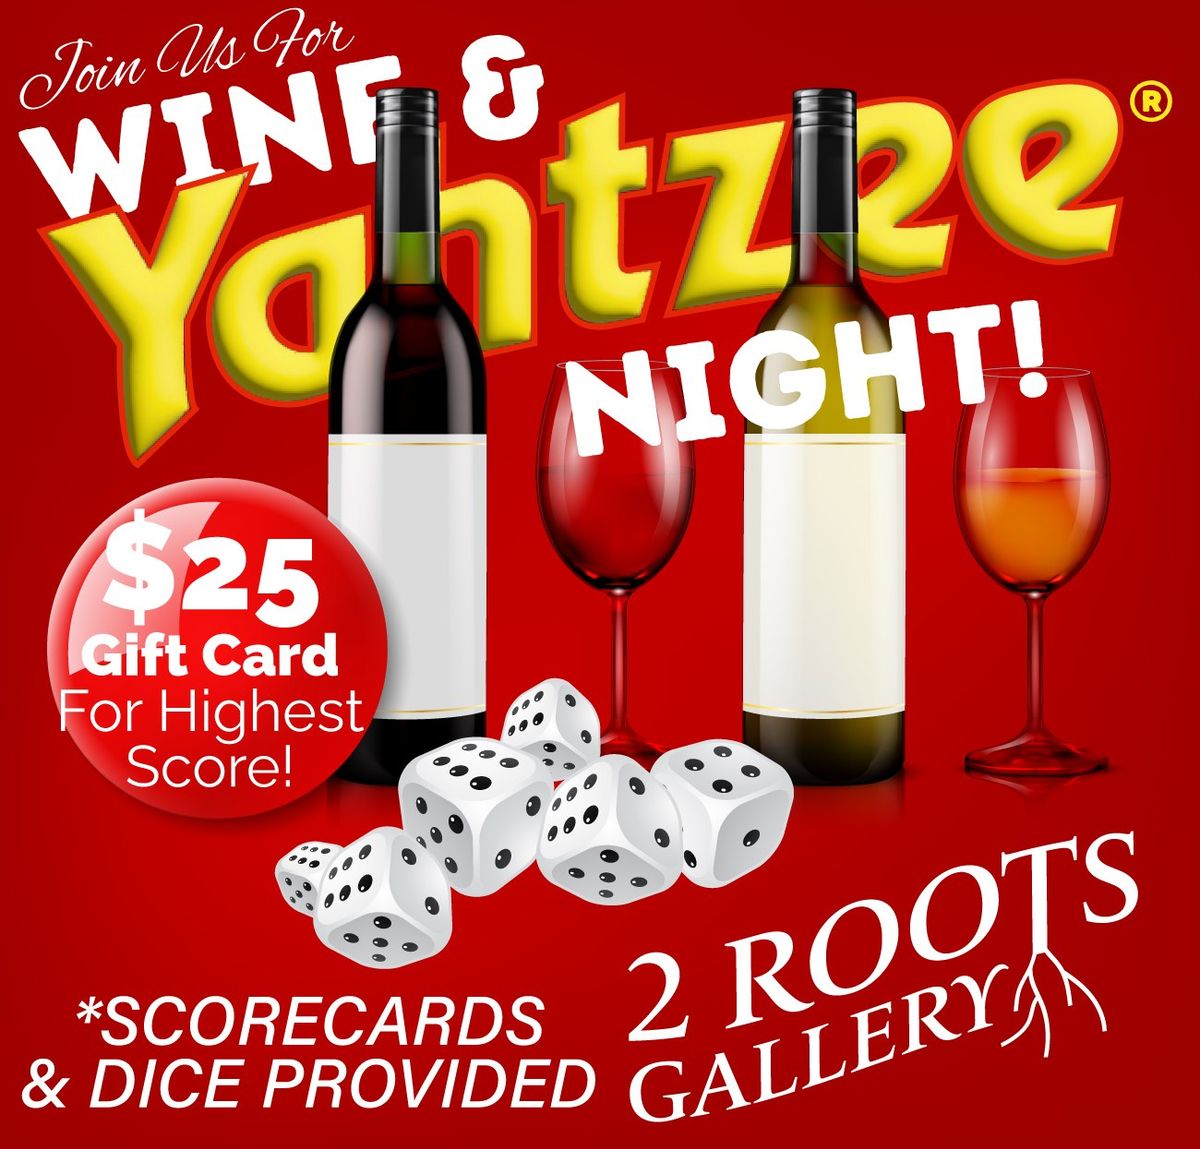 Yahtzee & Wine Night @ 2 Roots